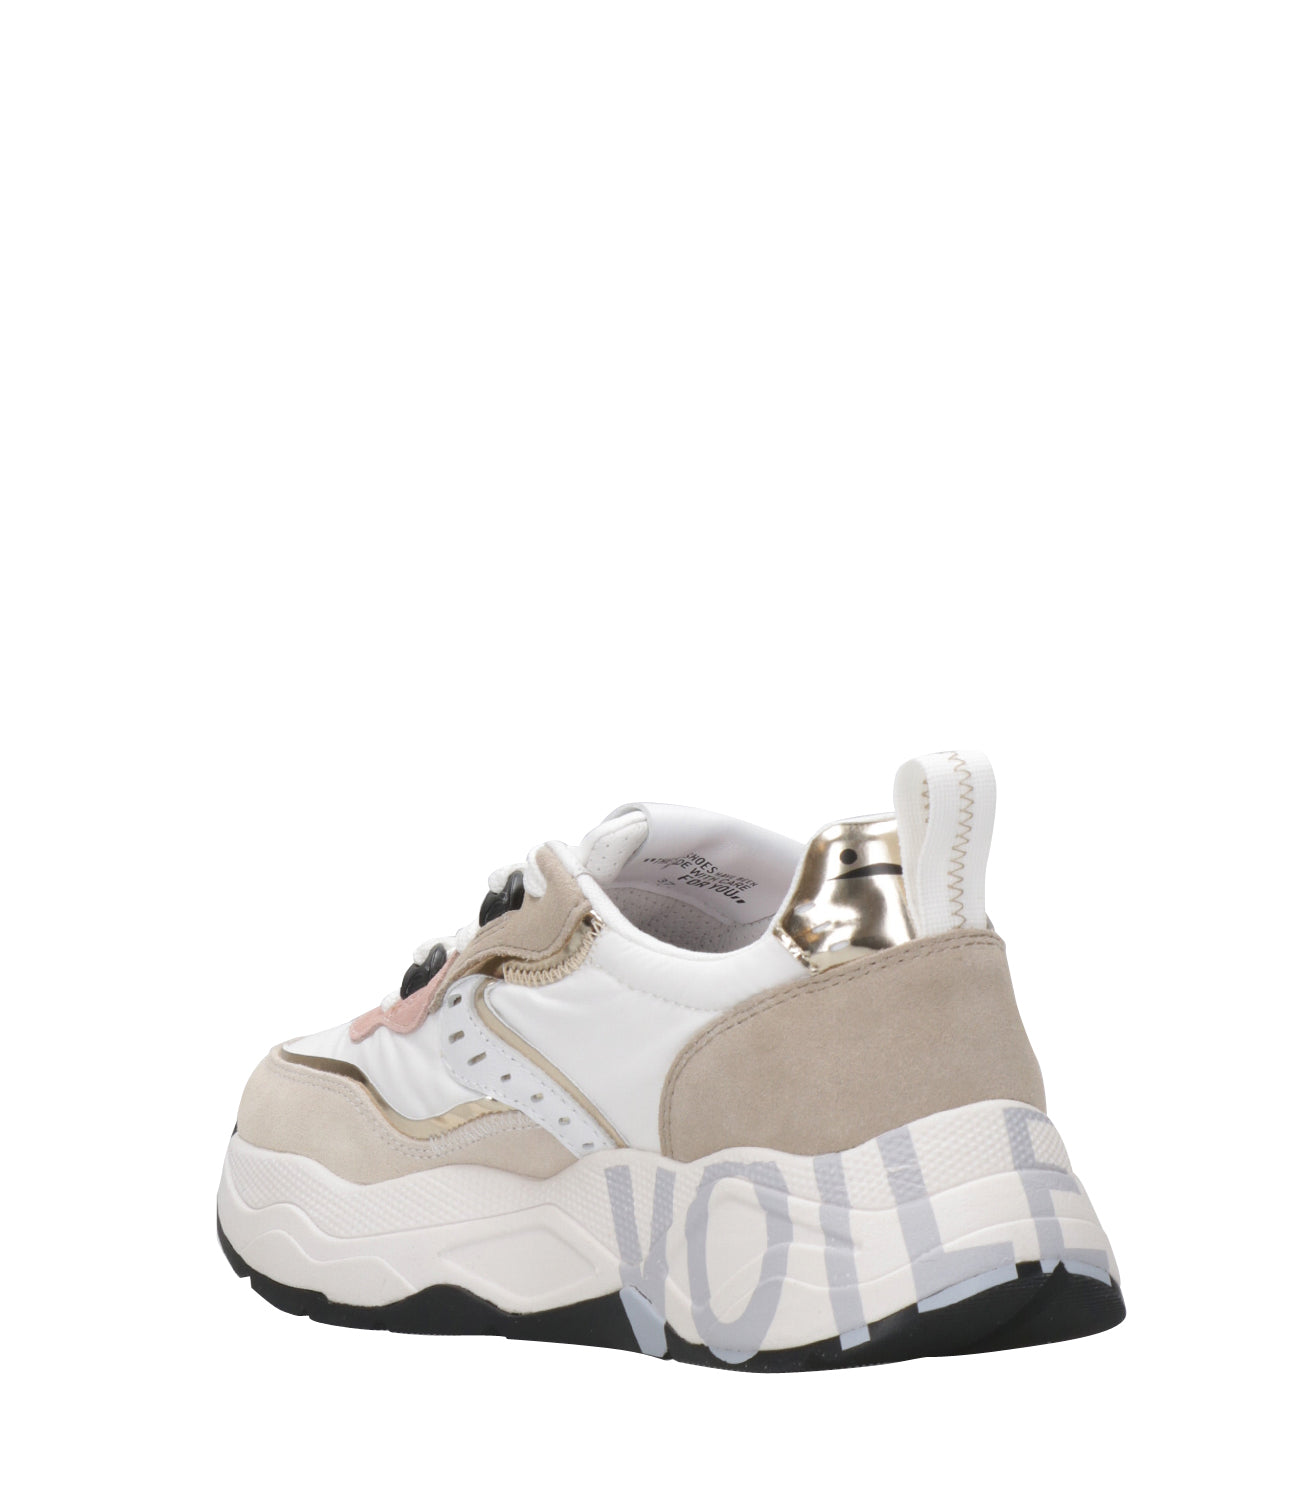 Voile Blanche | Sneakers Club105 Bianco, Sabbia e Platino